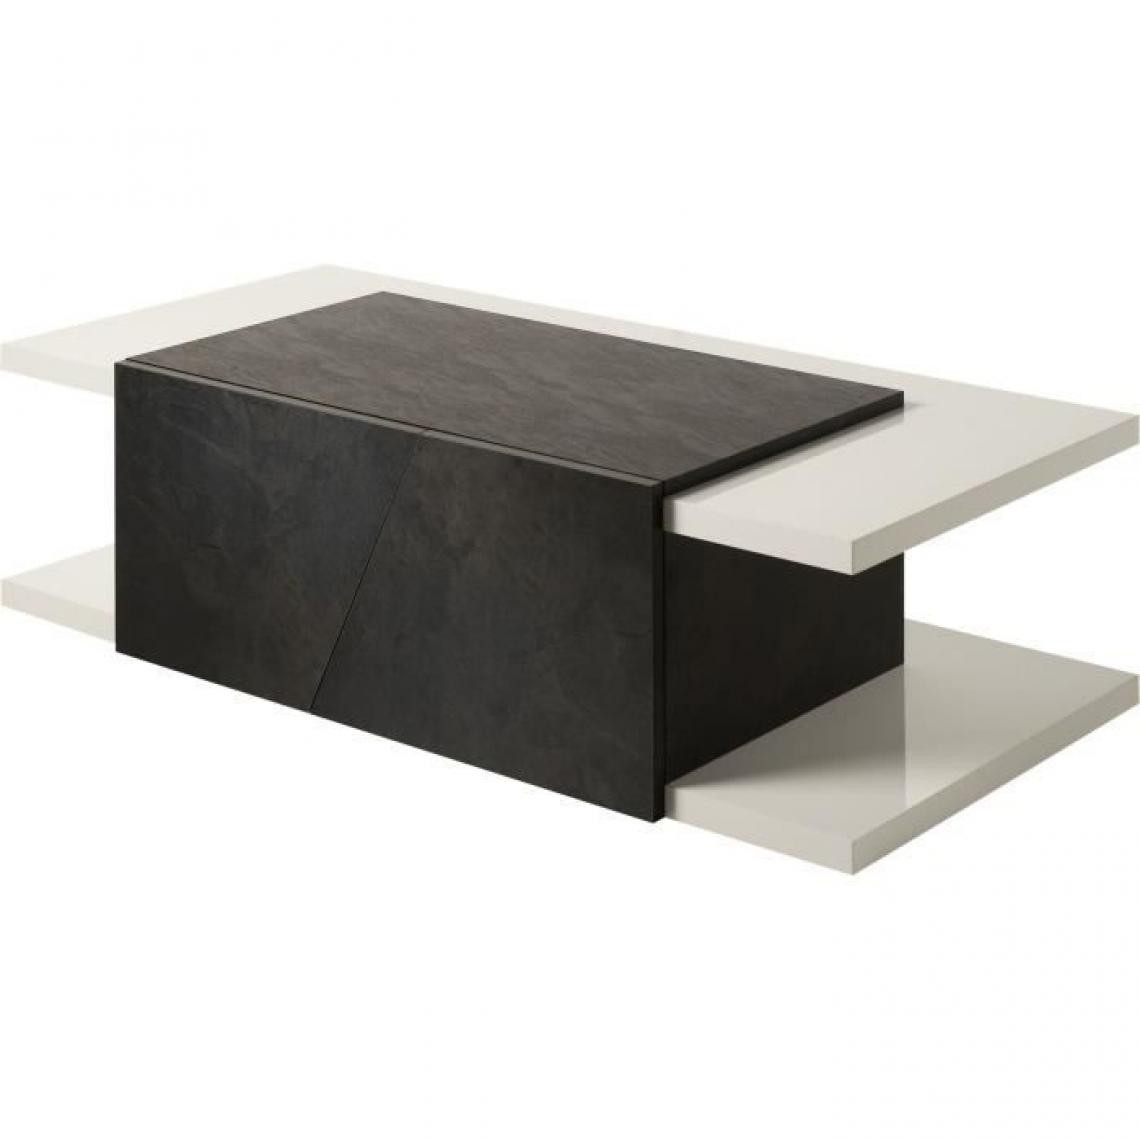 Cstore - Table basse 2 portes - Structure en panneau de particule épaisseur de 18mm - Blanc et gris - Cooper - Tables basses